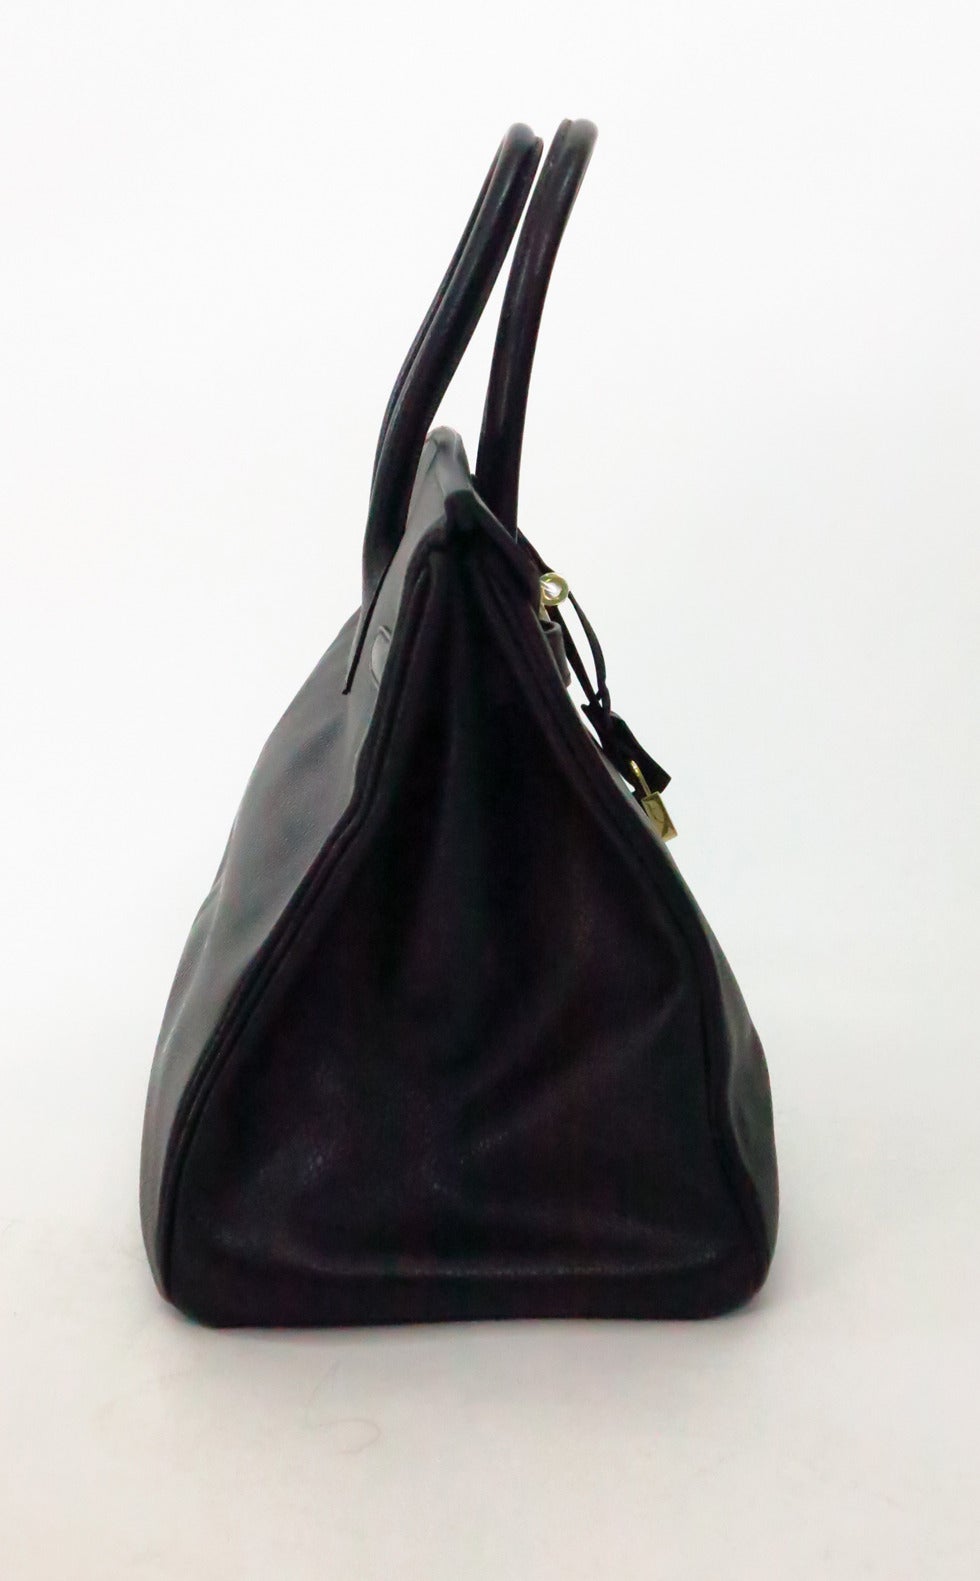 1998 Hermes black togo 35 Cm Birkin handbag with gold hardware 2